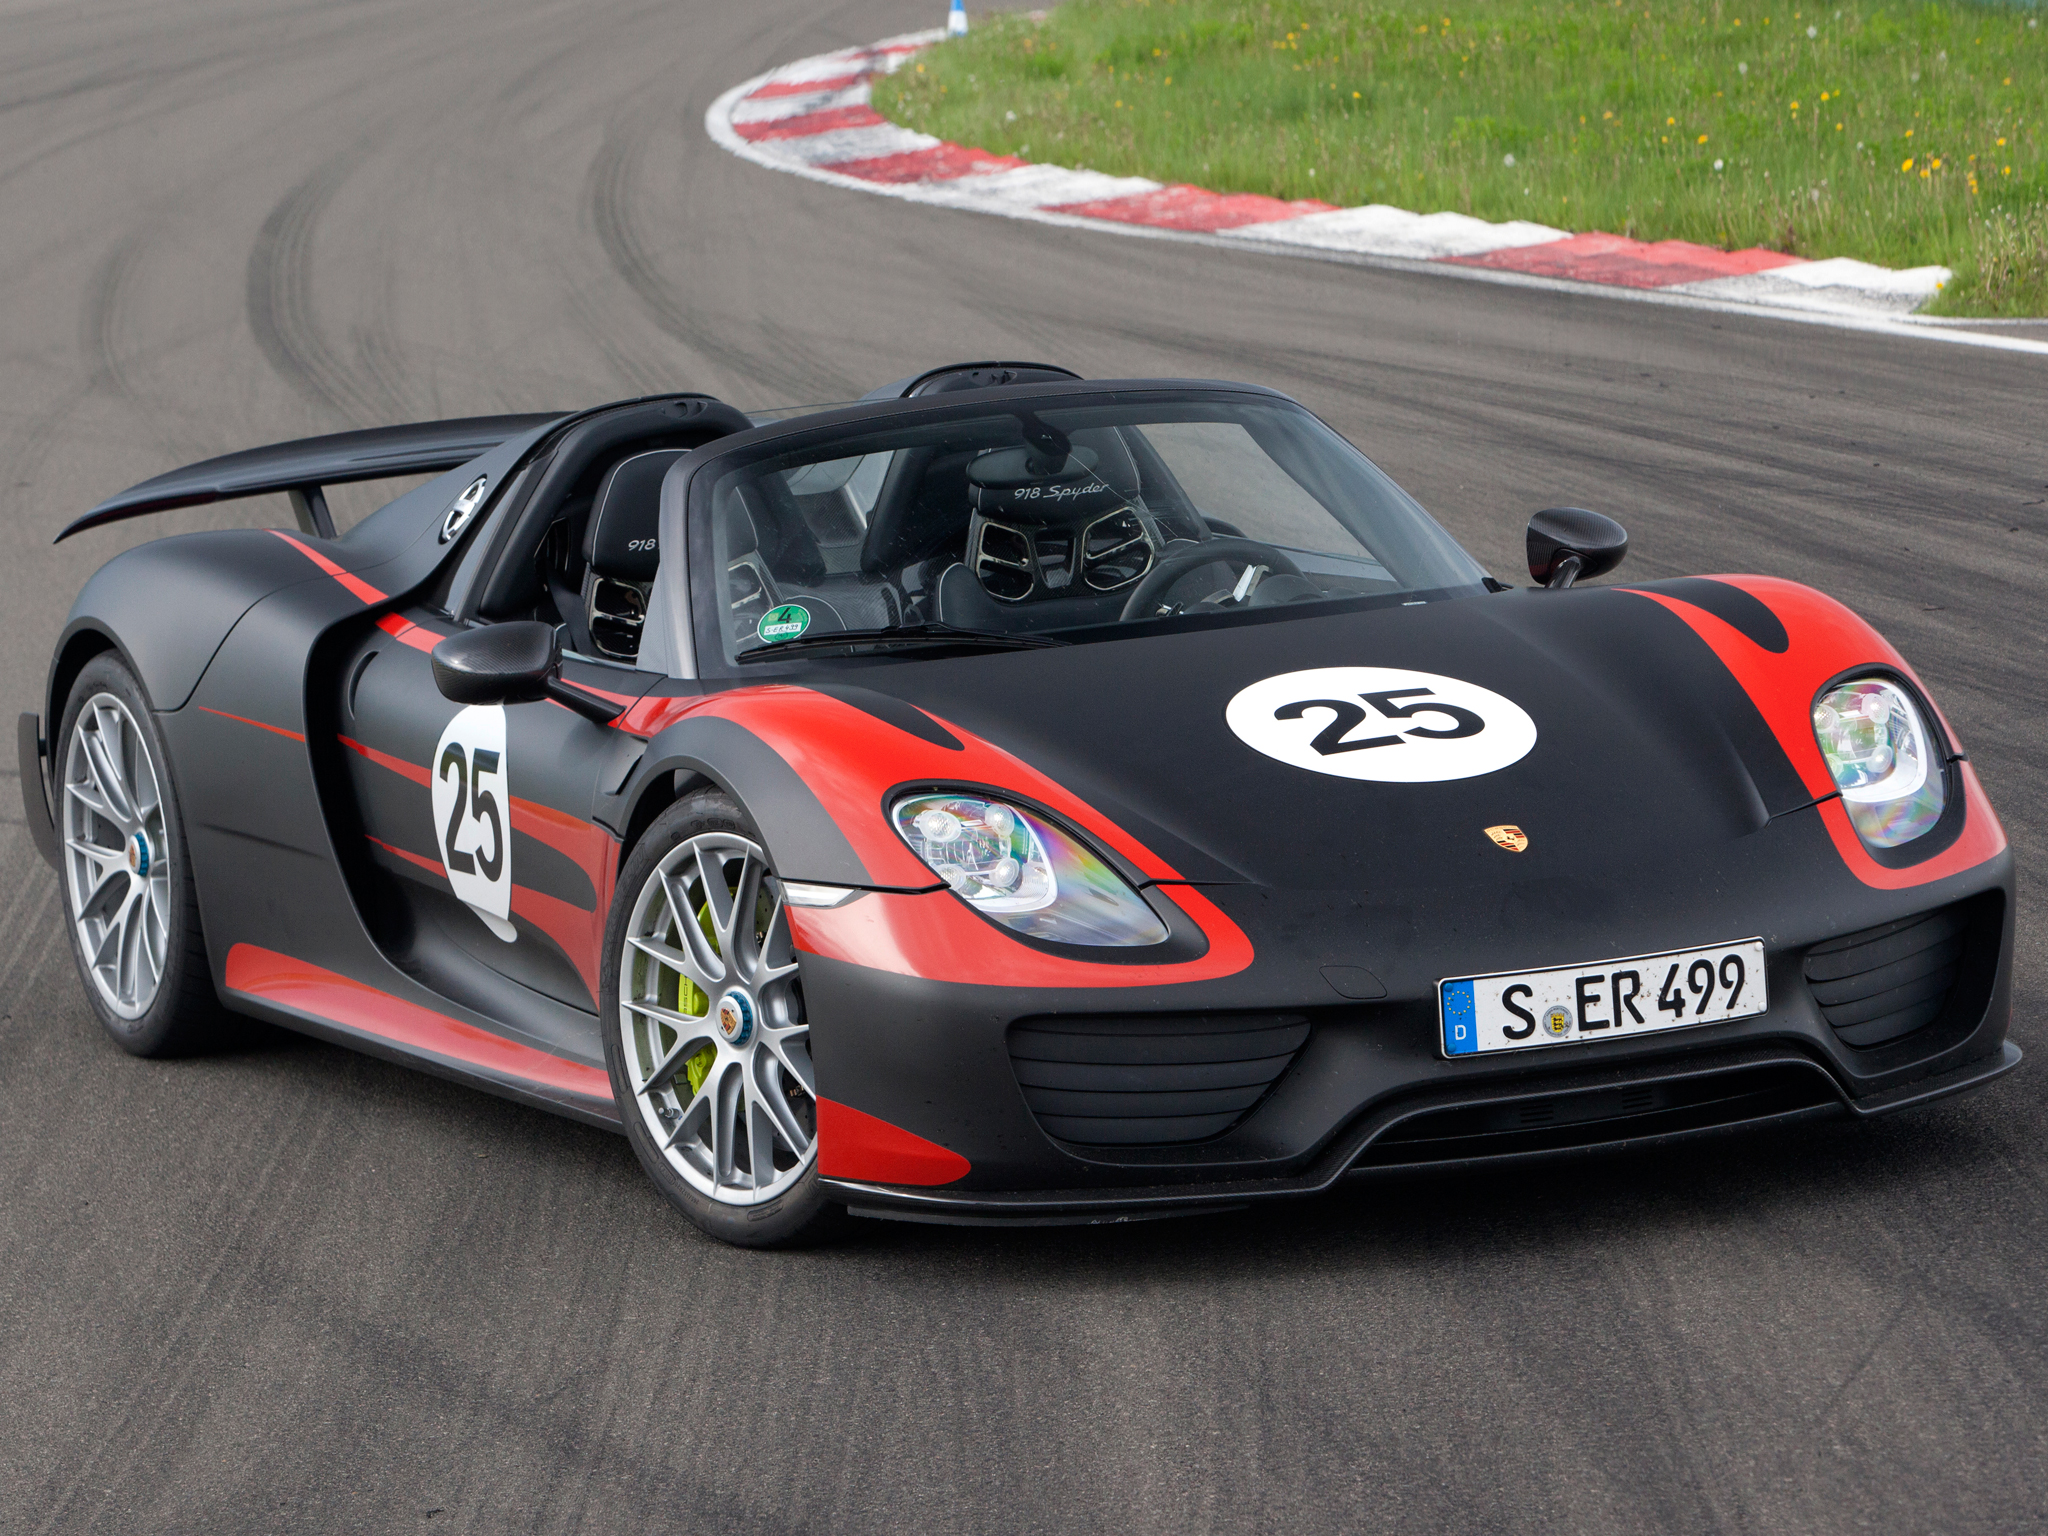 2013, Porsche, 918, Spyder, Prototype, Supercars, Supercar, Race, Racing Wallpaper